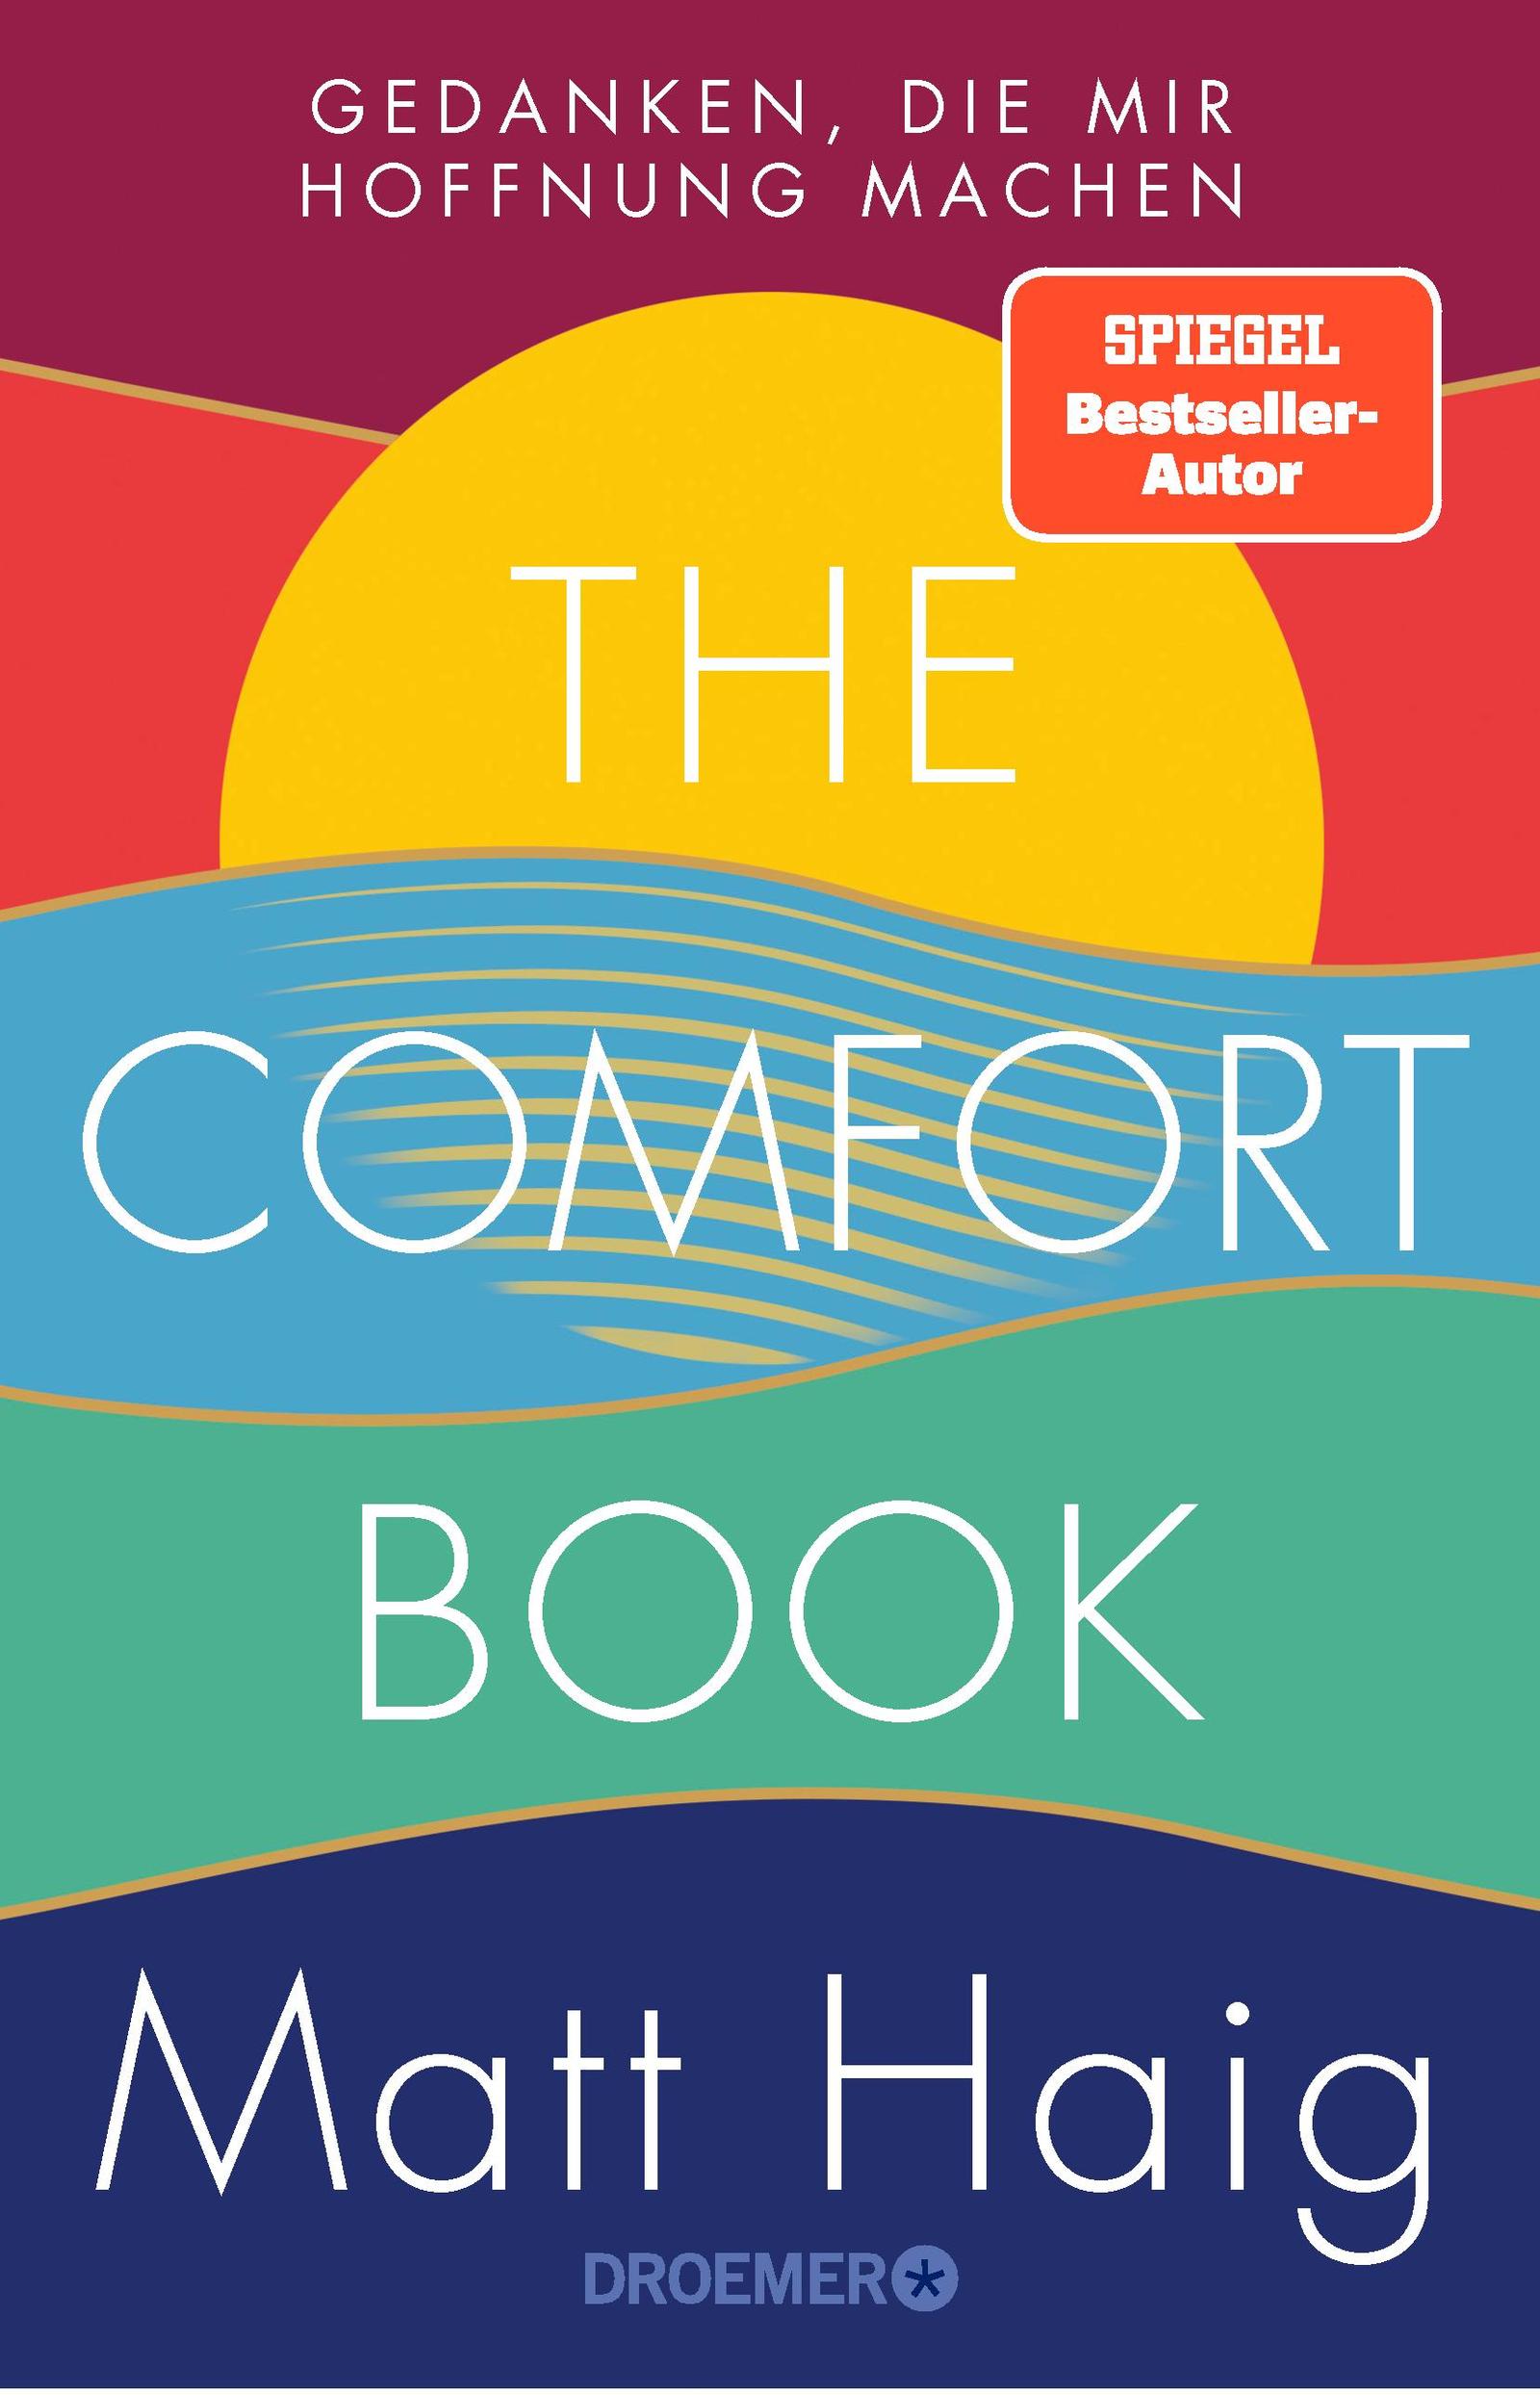 the comfort book by matt haig